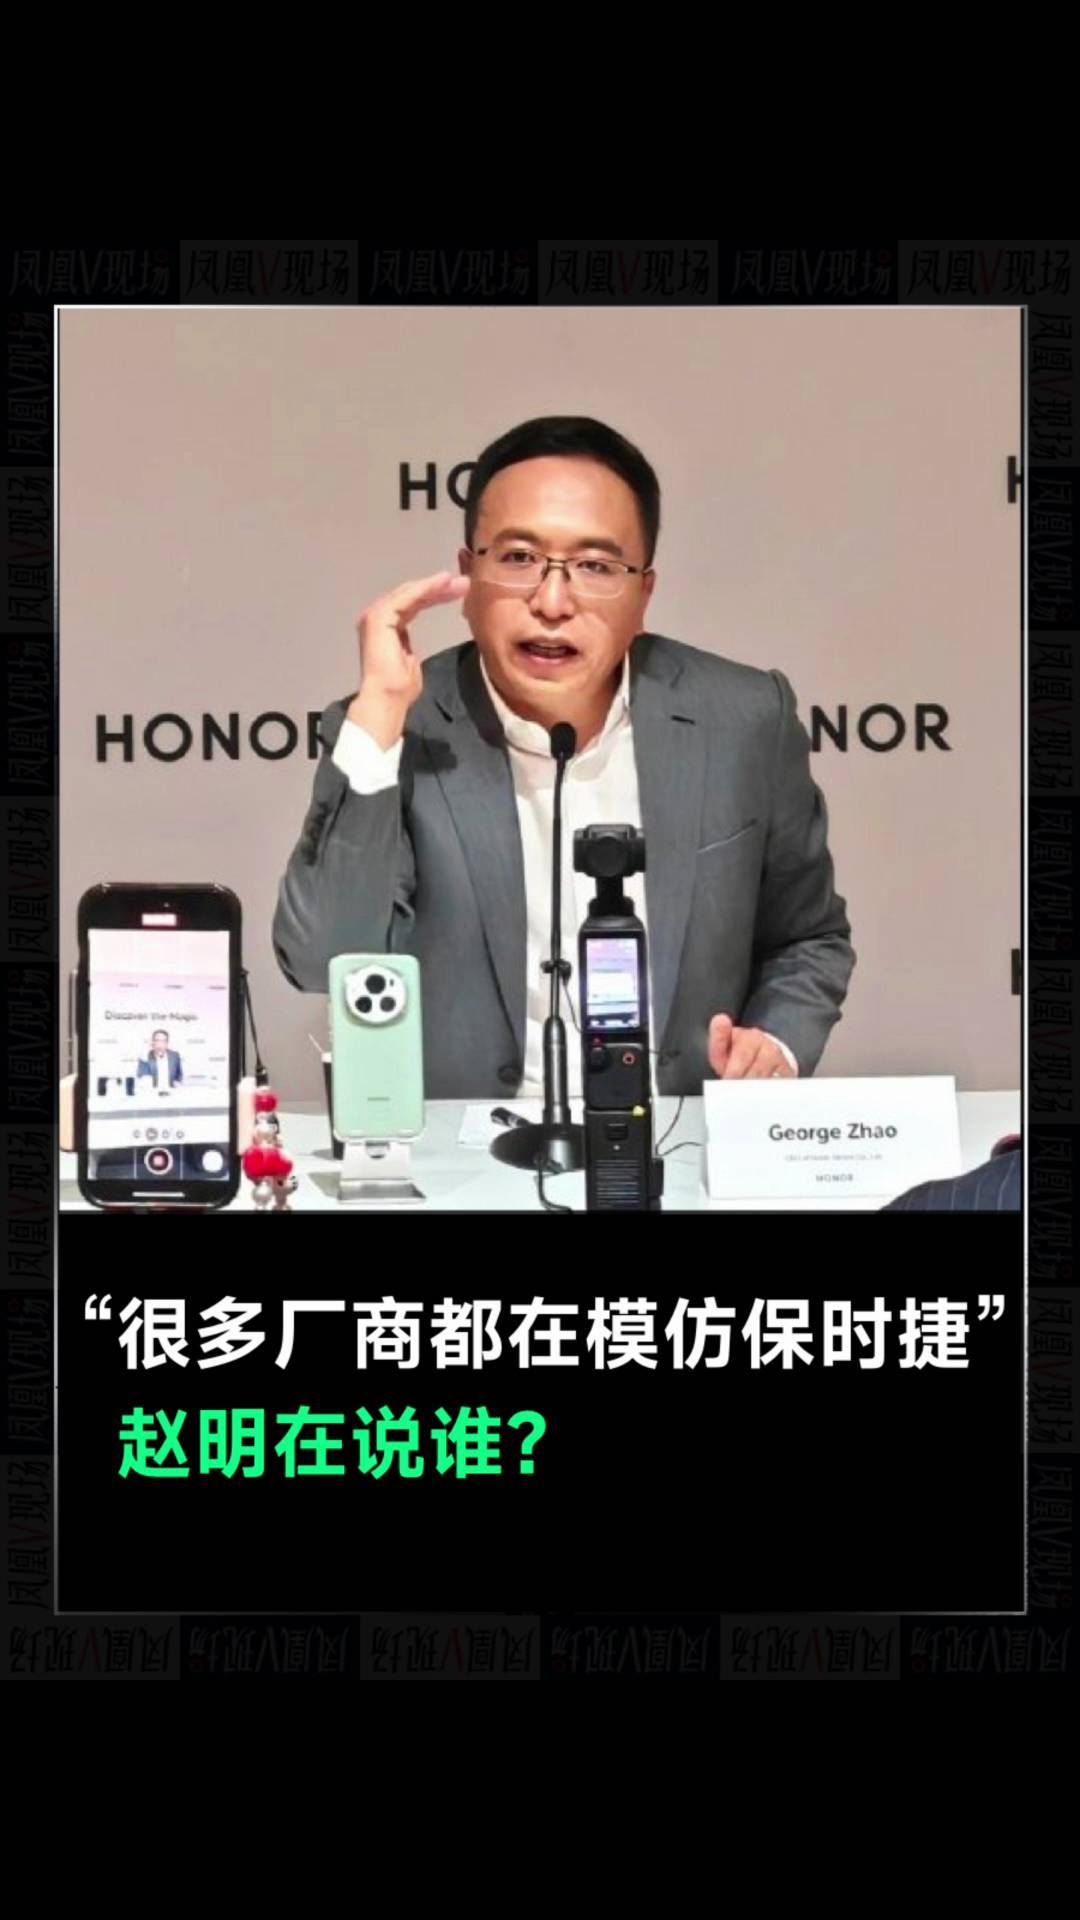 “很多厂商都在模仿保时捷”，赵明在说谁？